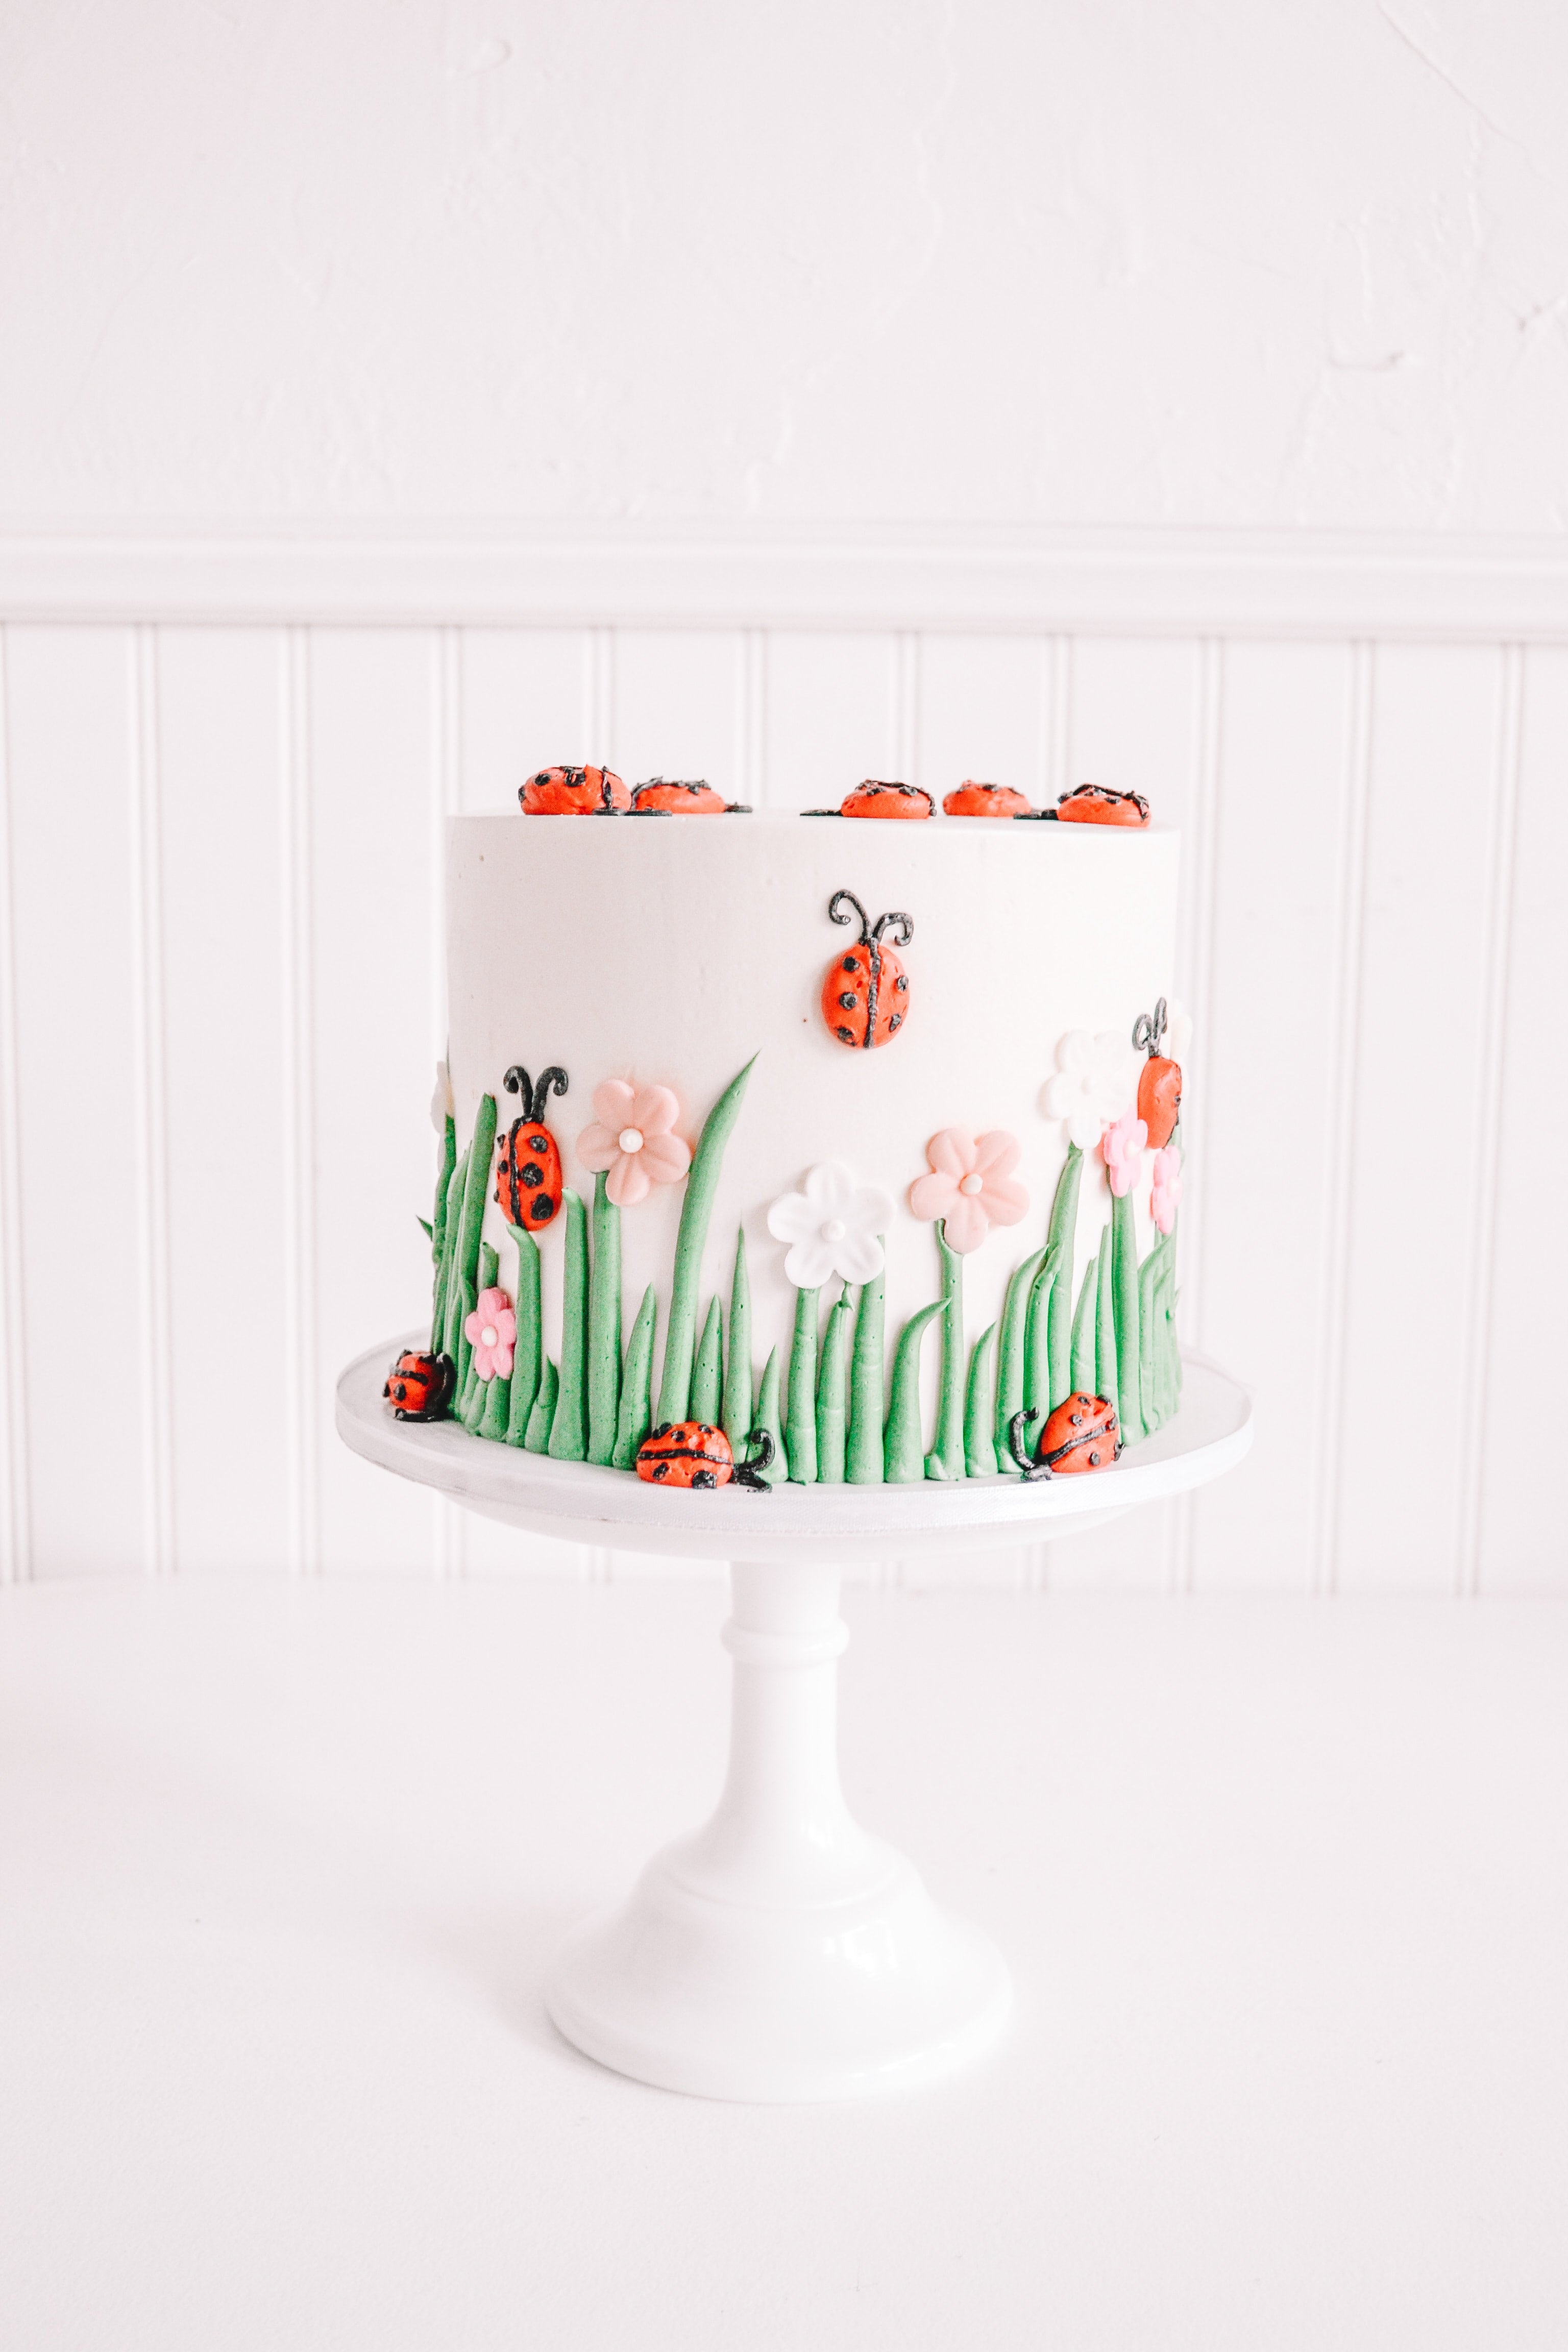 Ladybug Cake 1